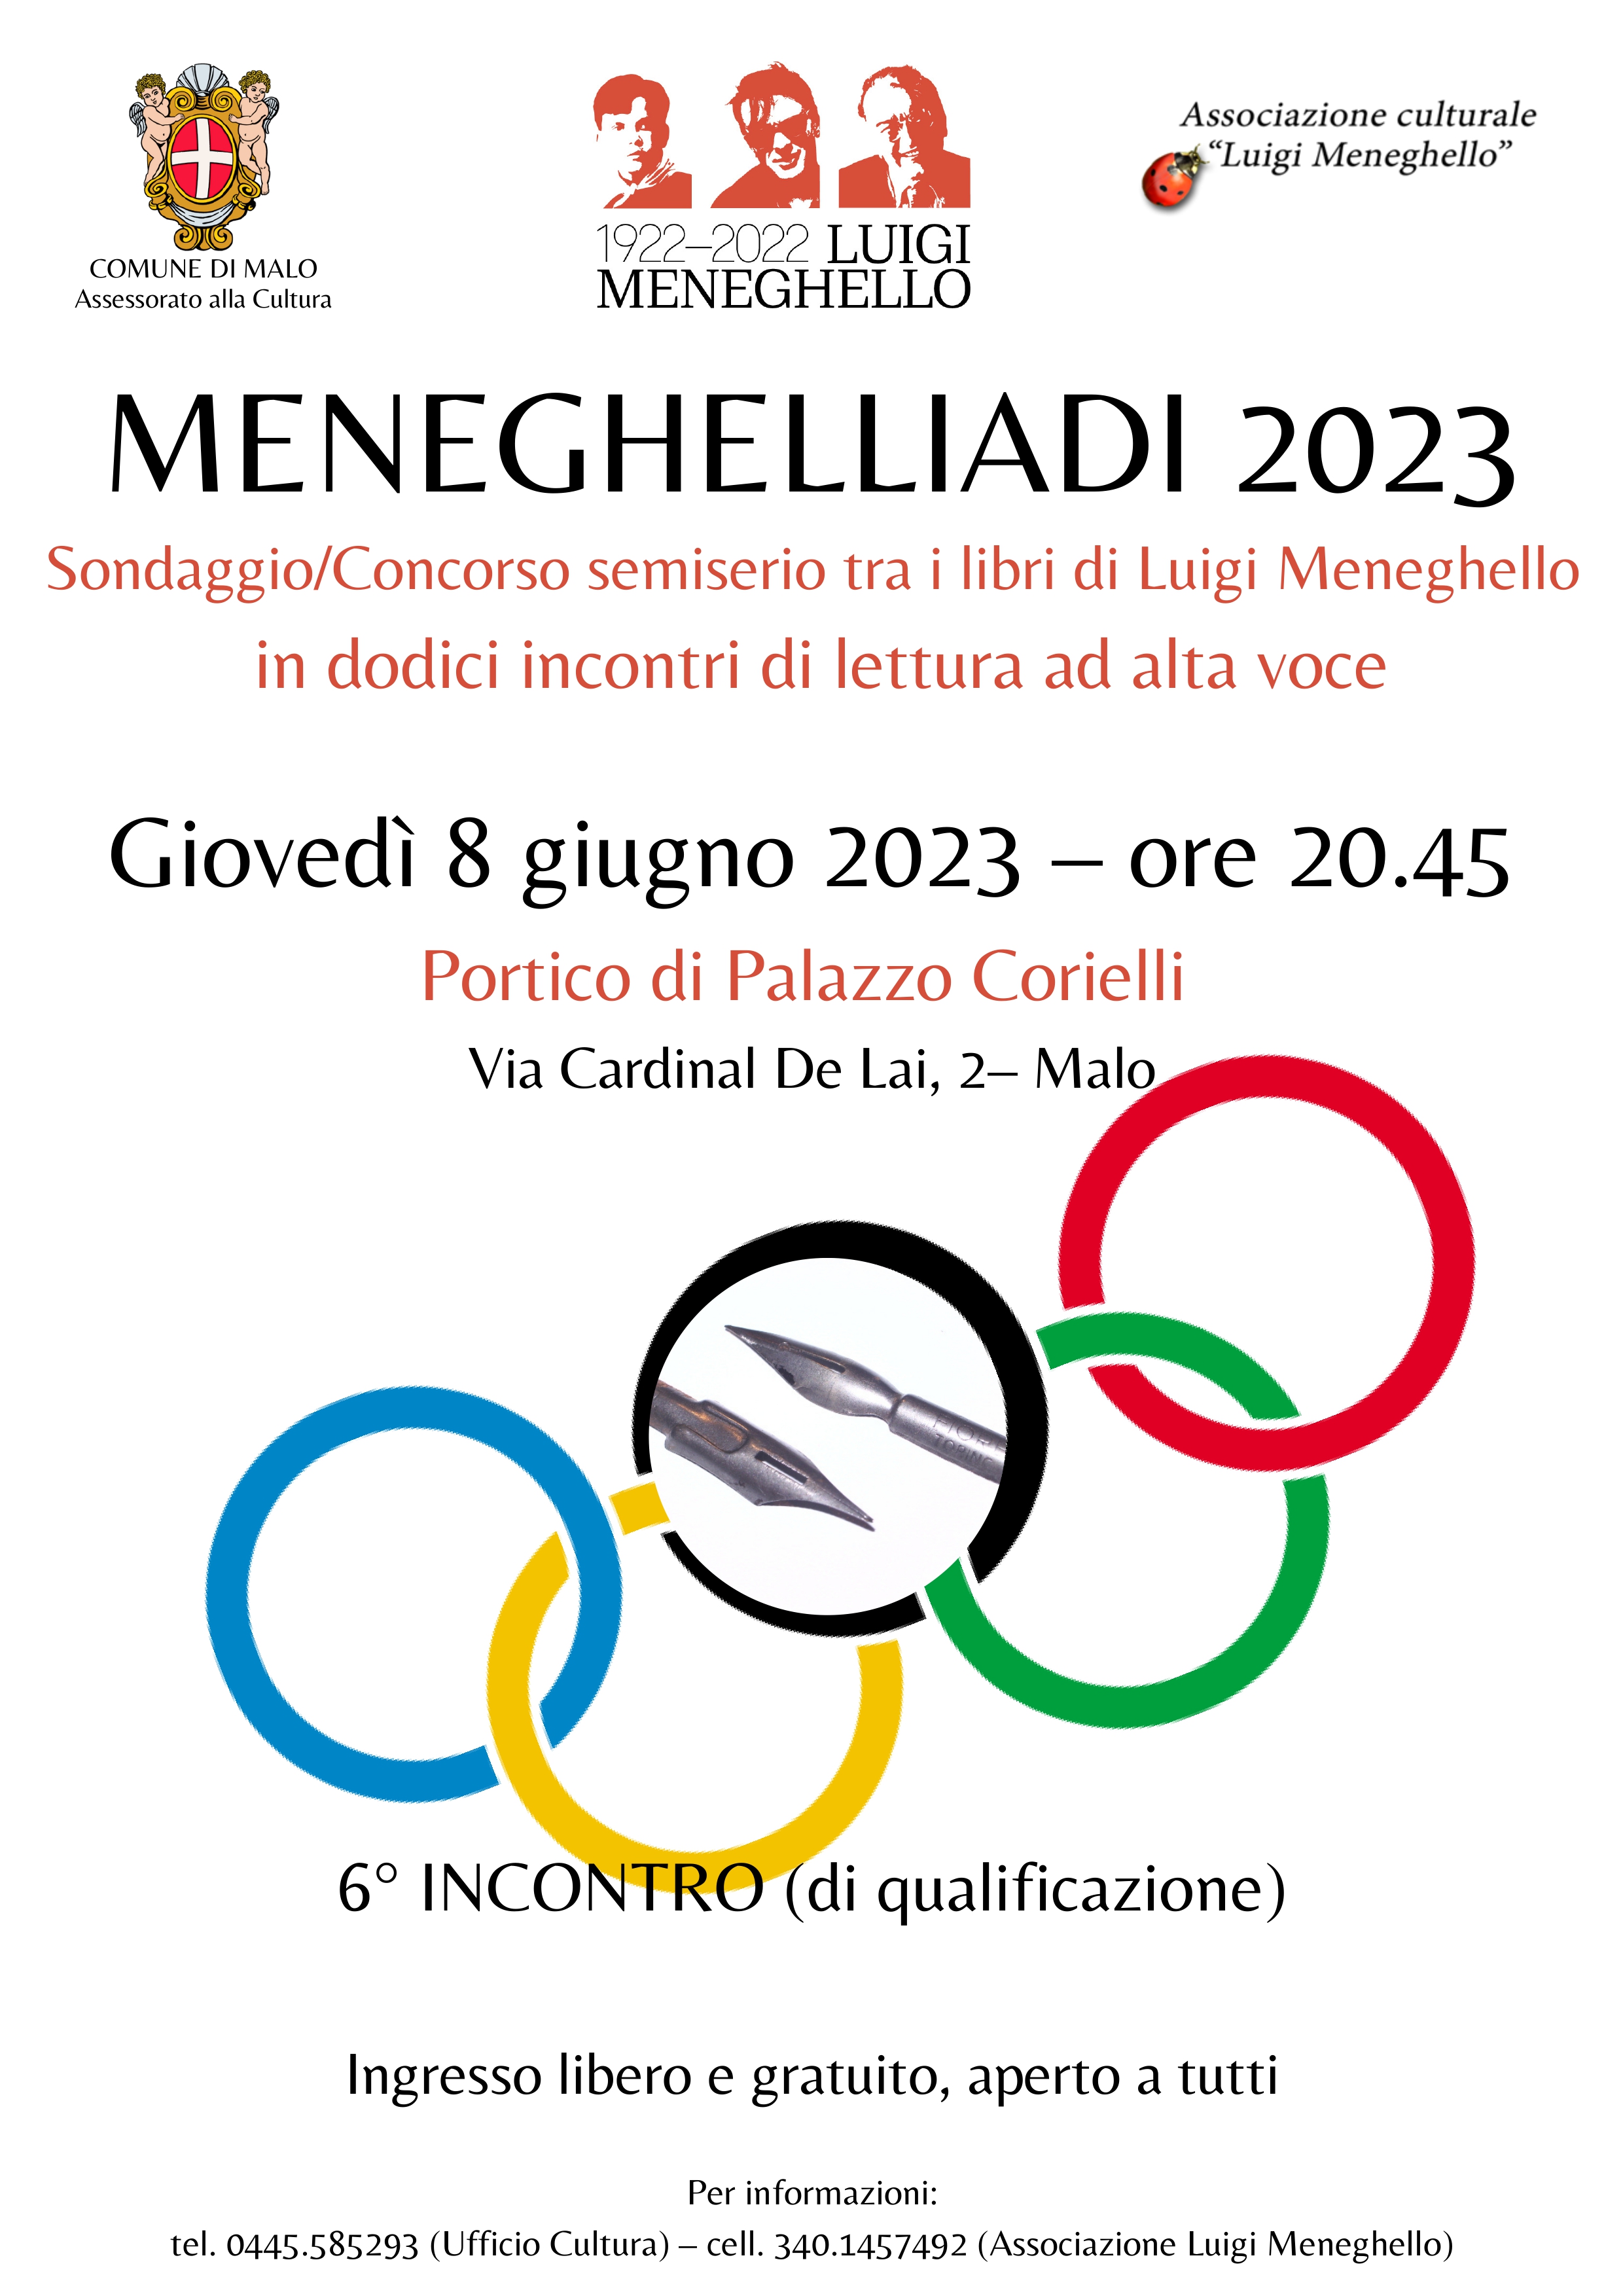 Meneghelliadi 2023. 6° incontro (di qualificazione)